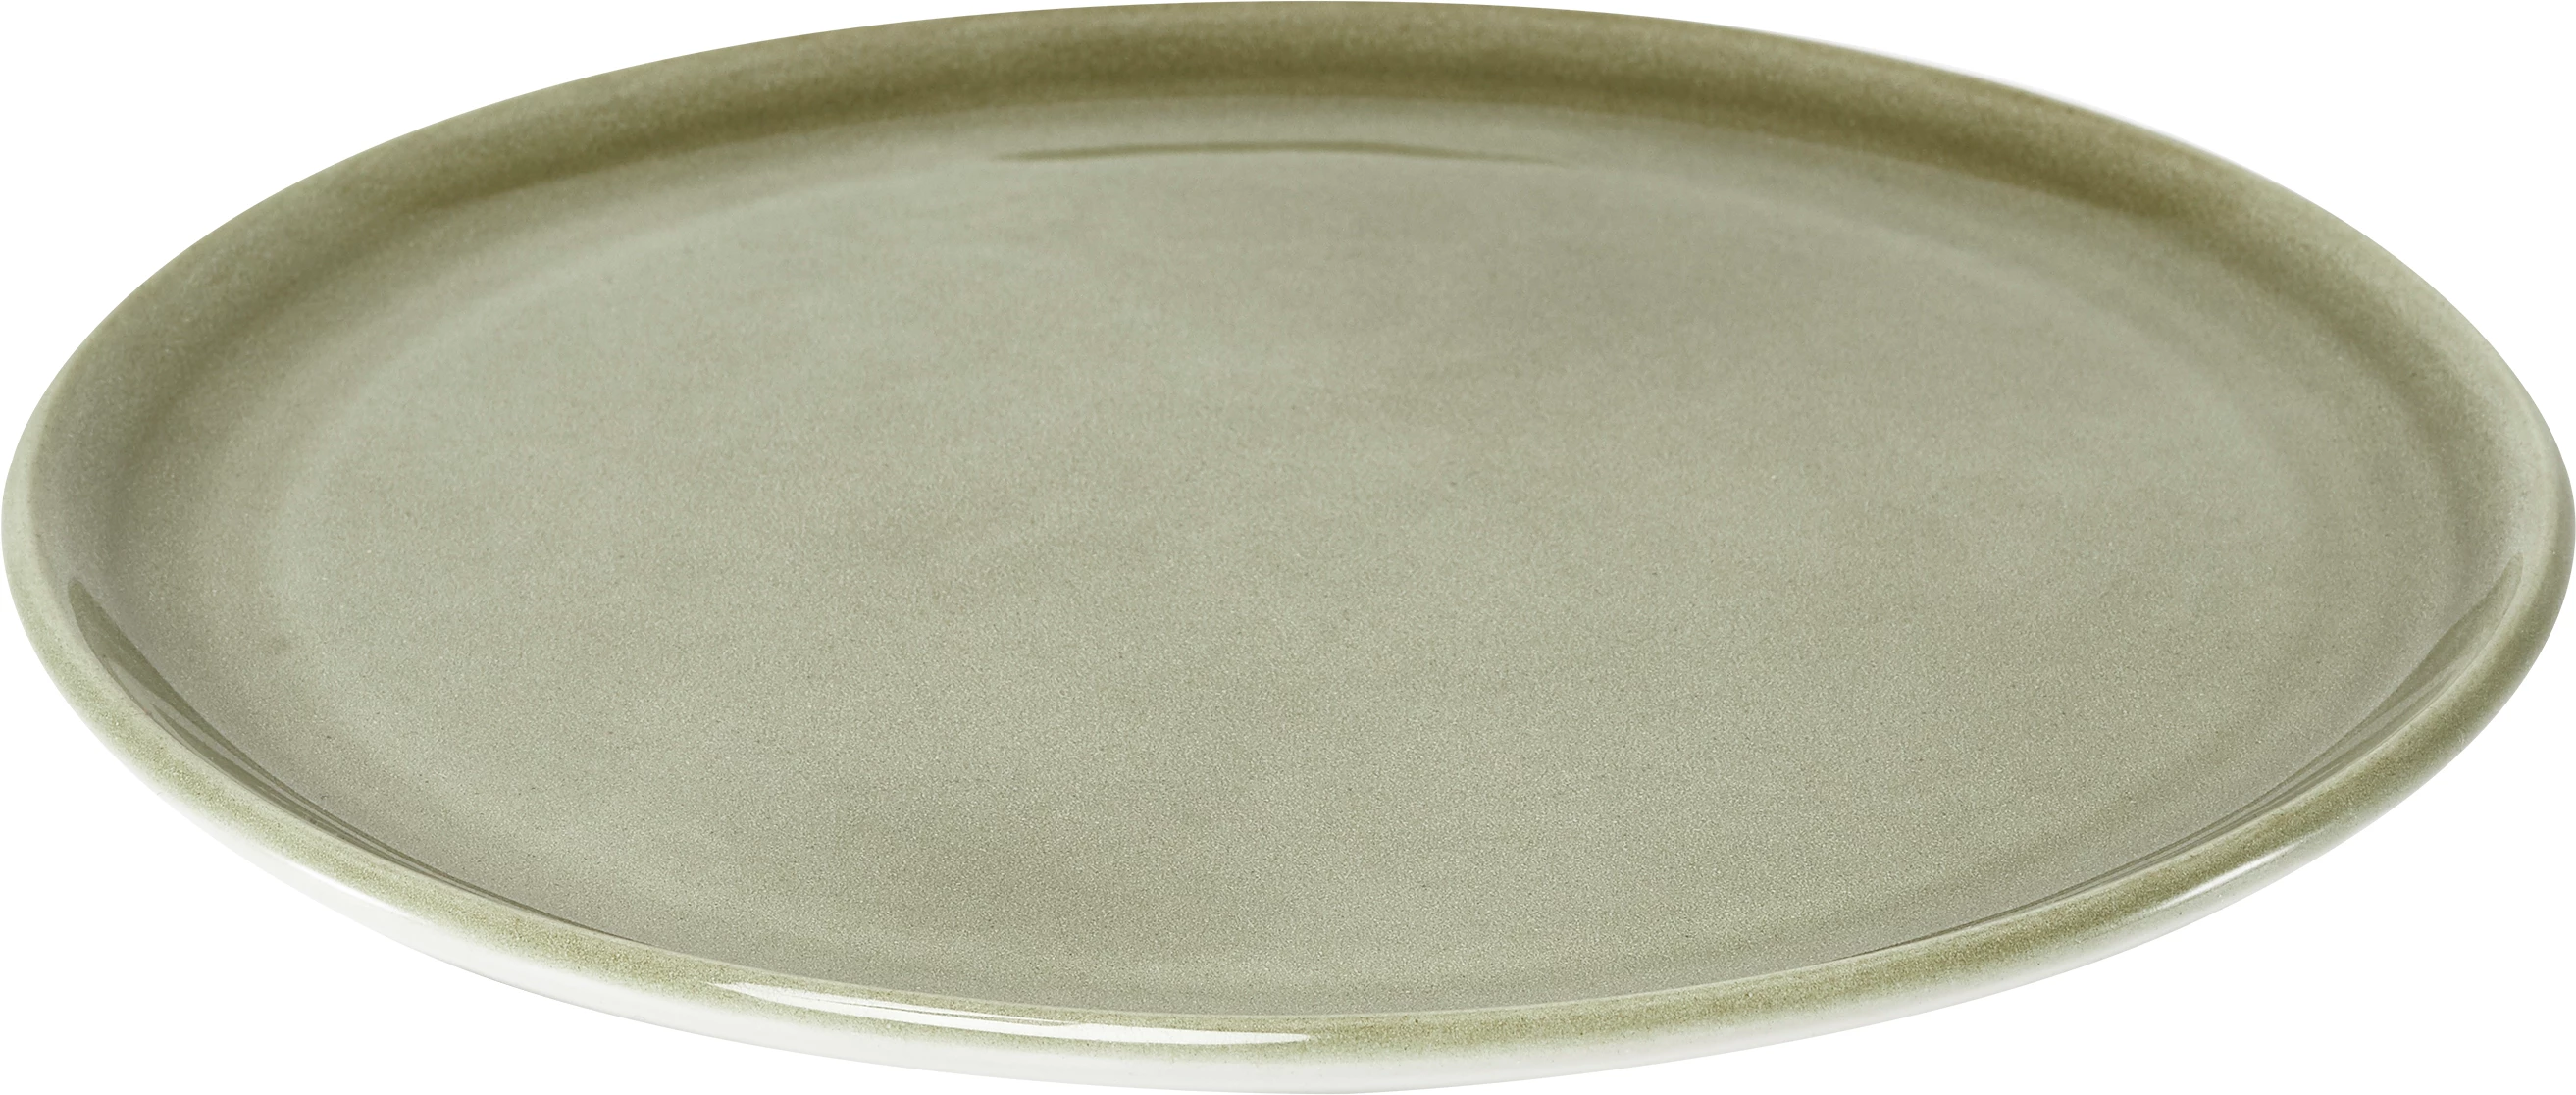 Figgjo Pax tallerken, flad, oliven, ø24 cm